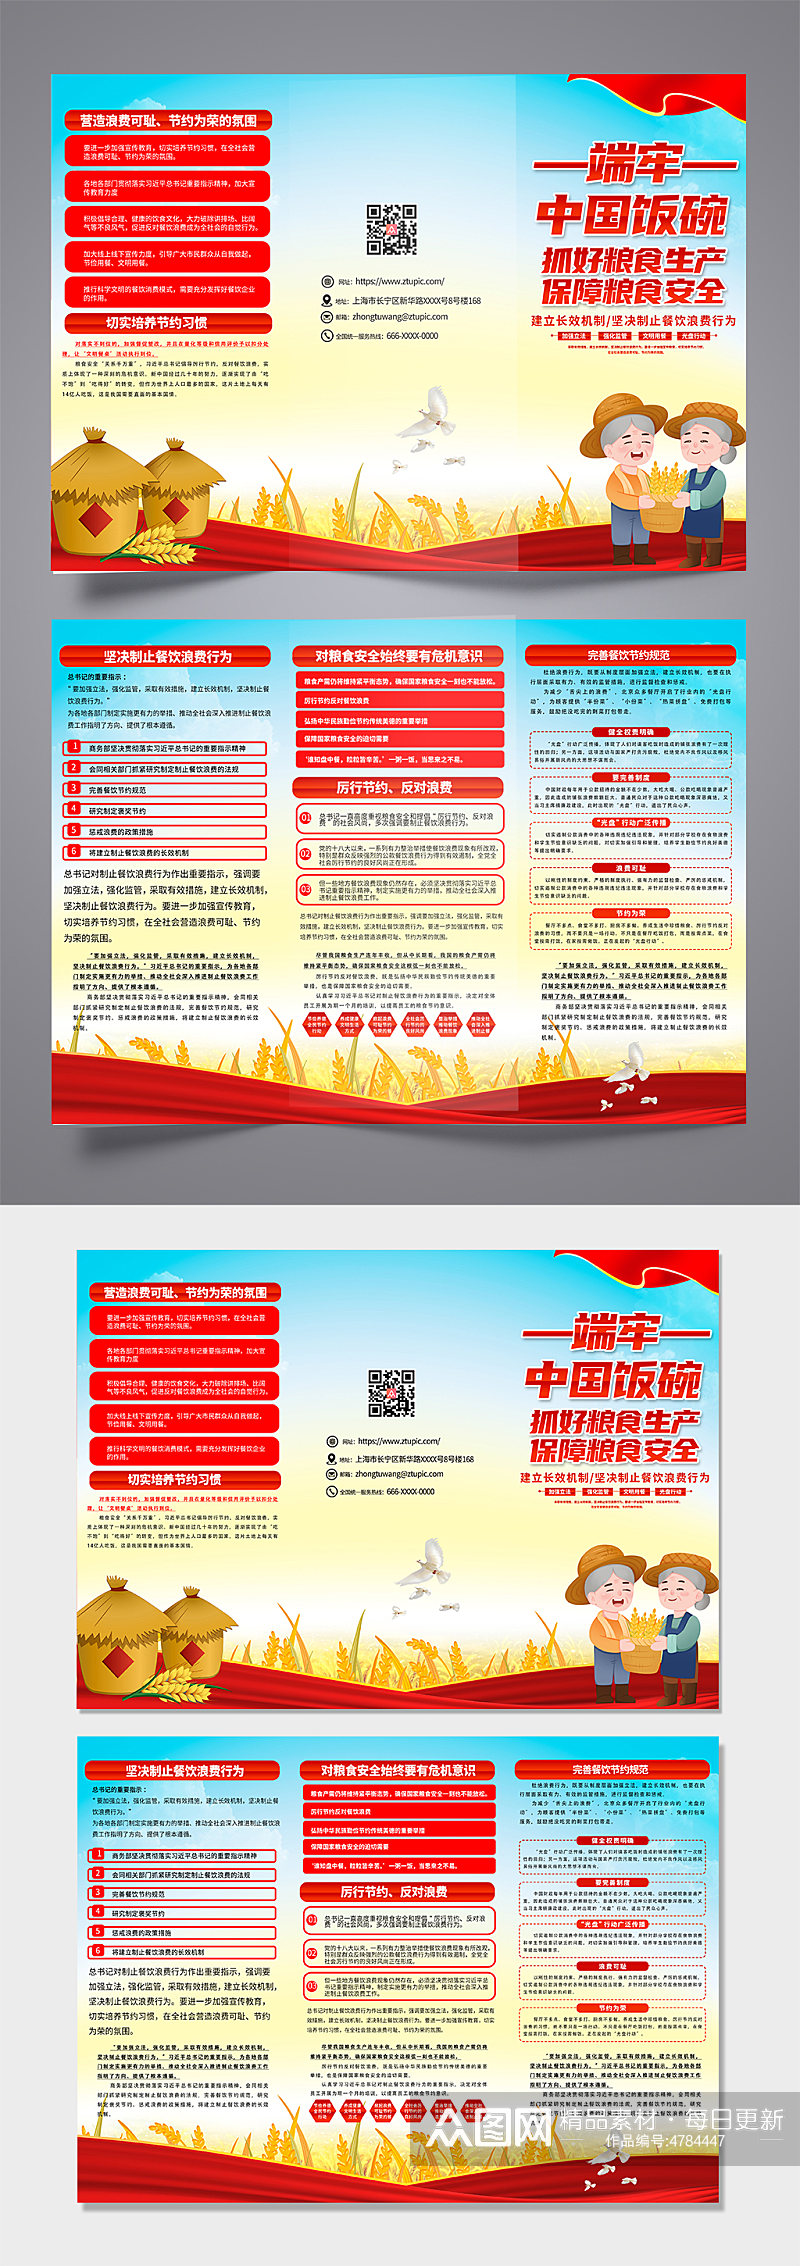 红色端牢中国饭碗保证粮食安全三折页设计素材